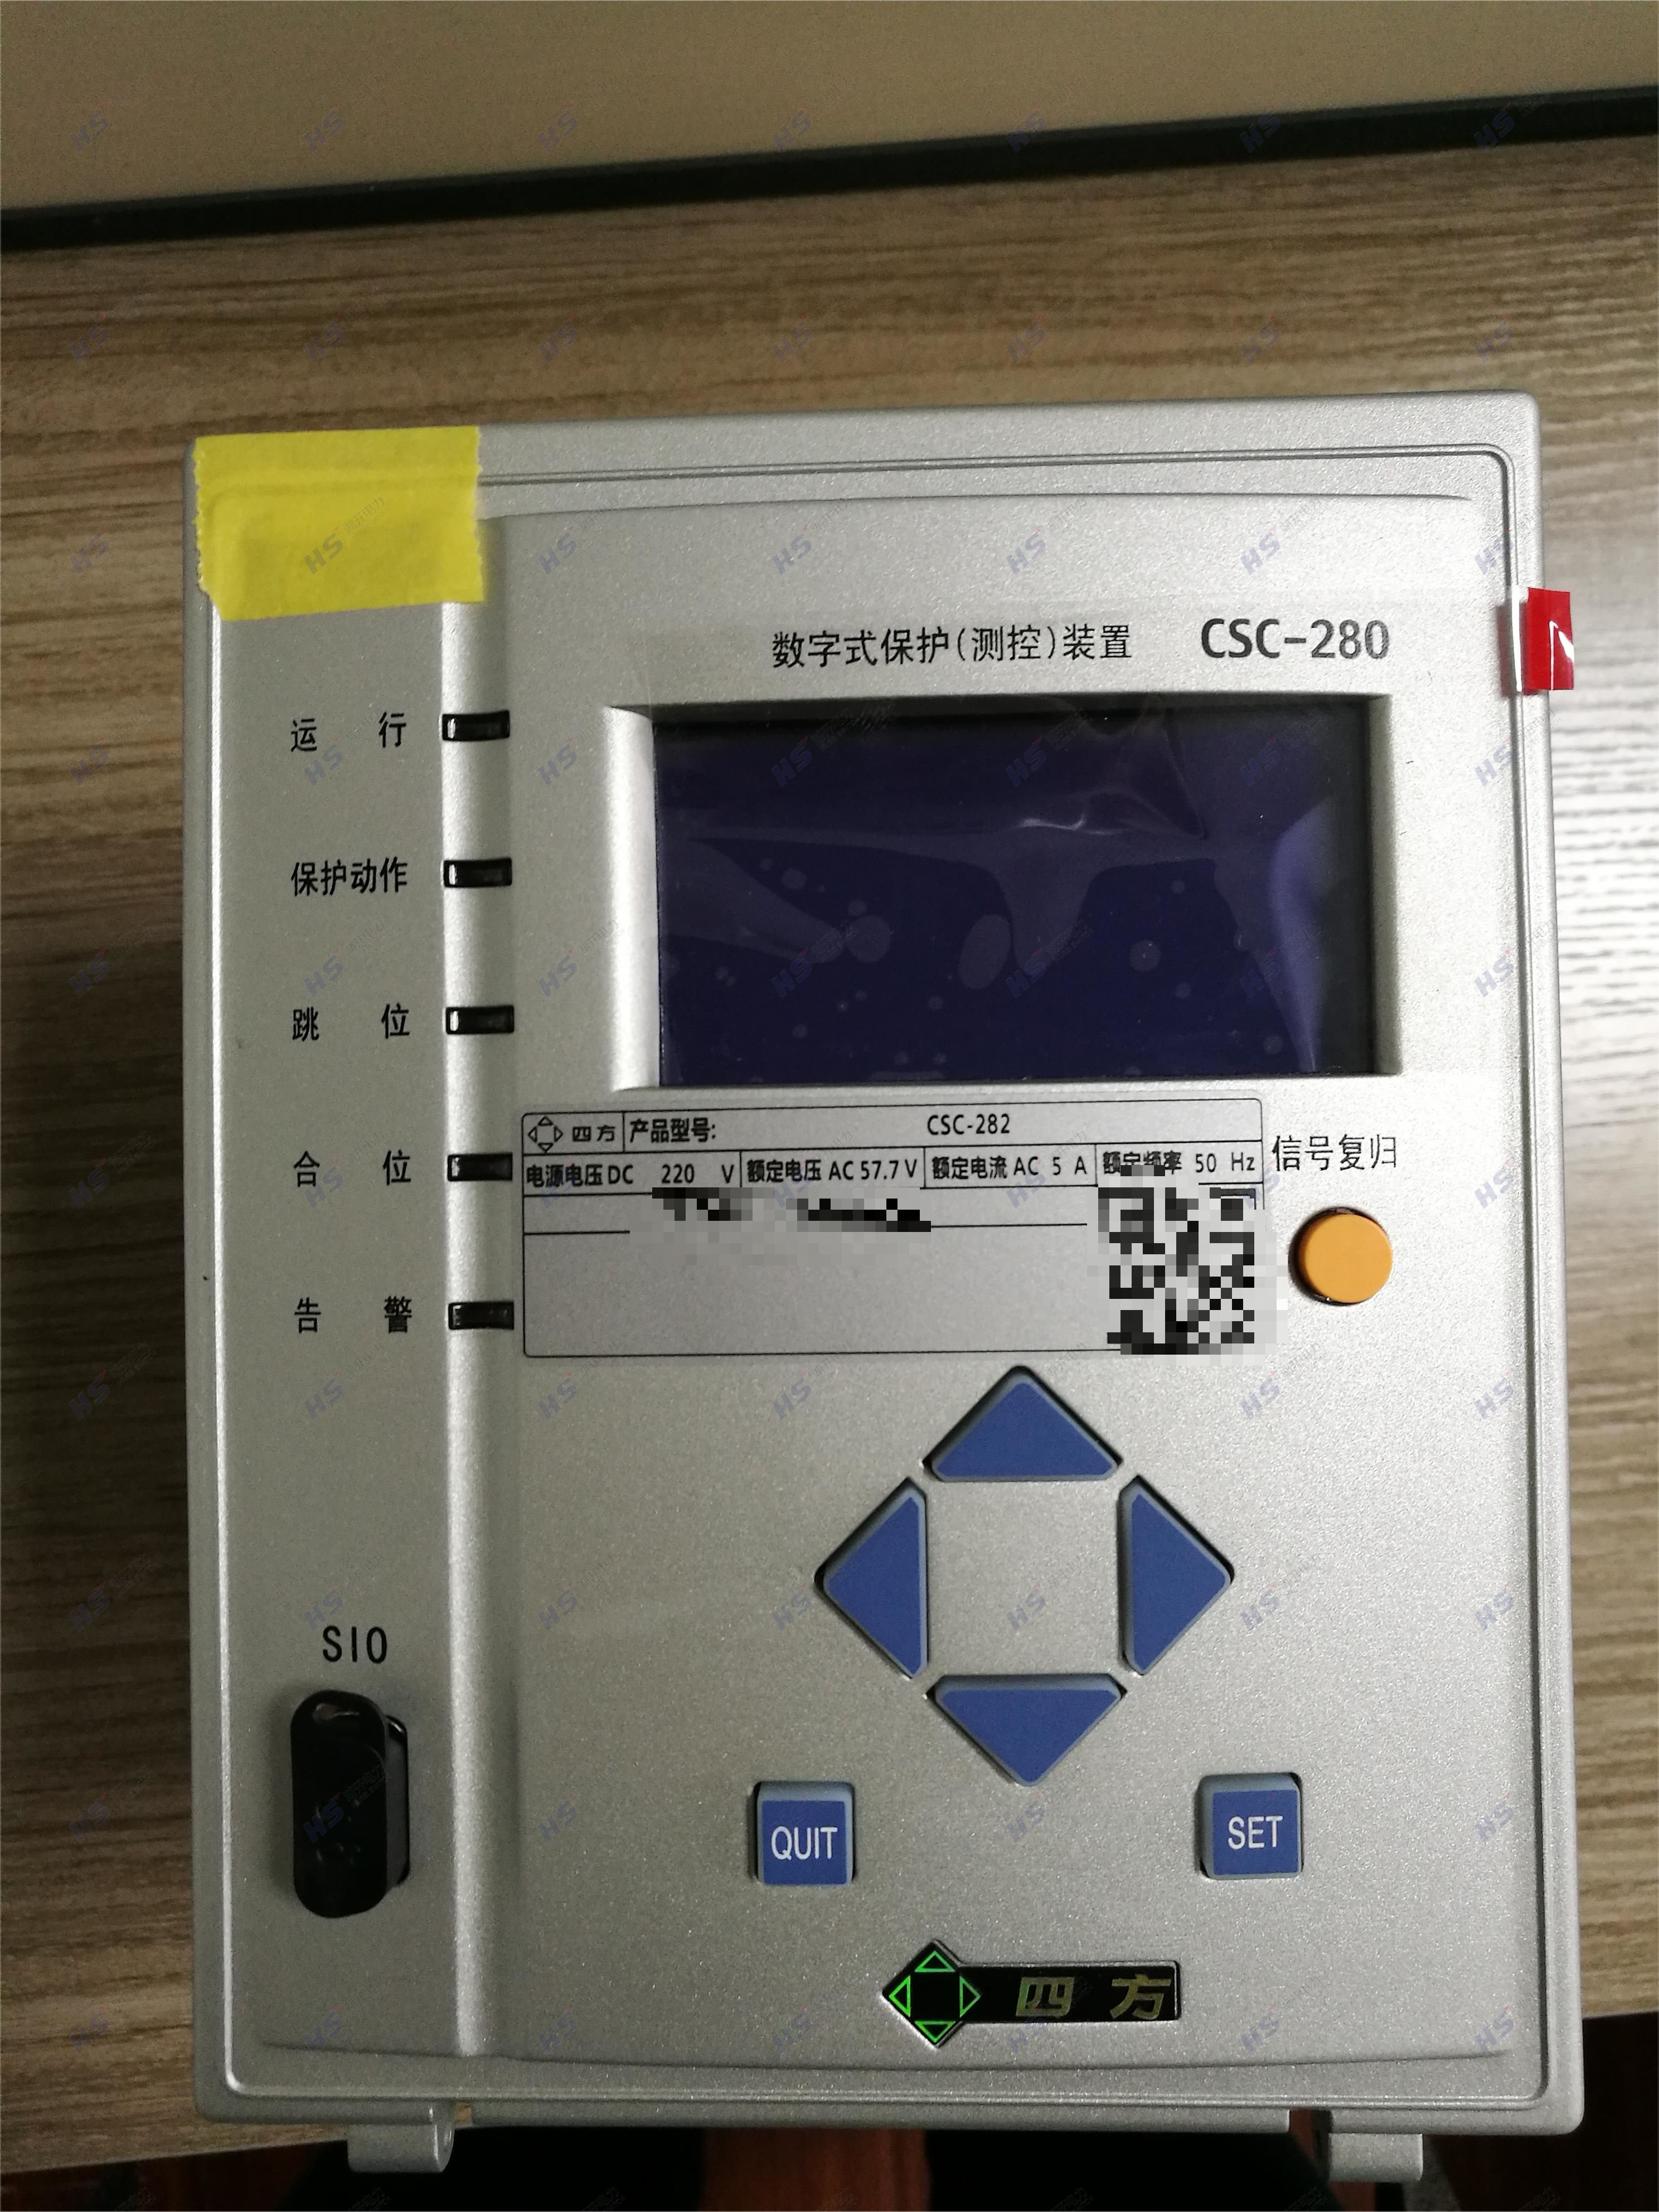 北京四方CSC-286数字式备用电源自动投入装置